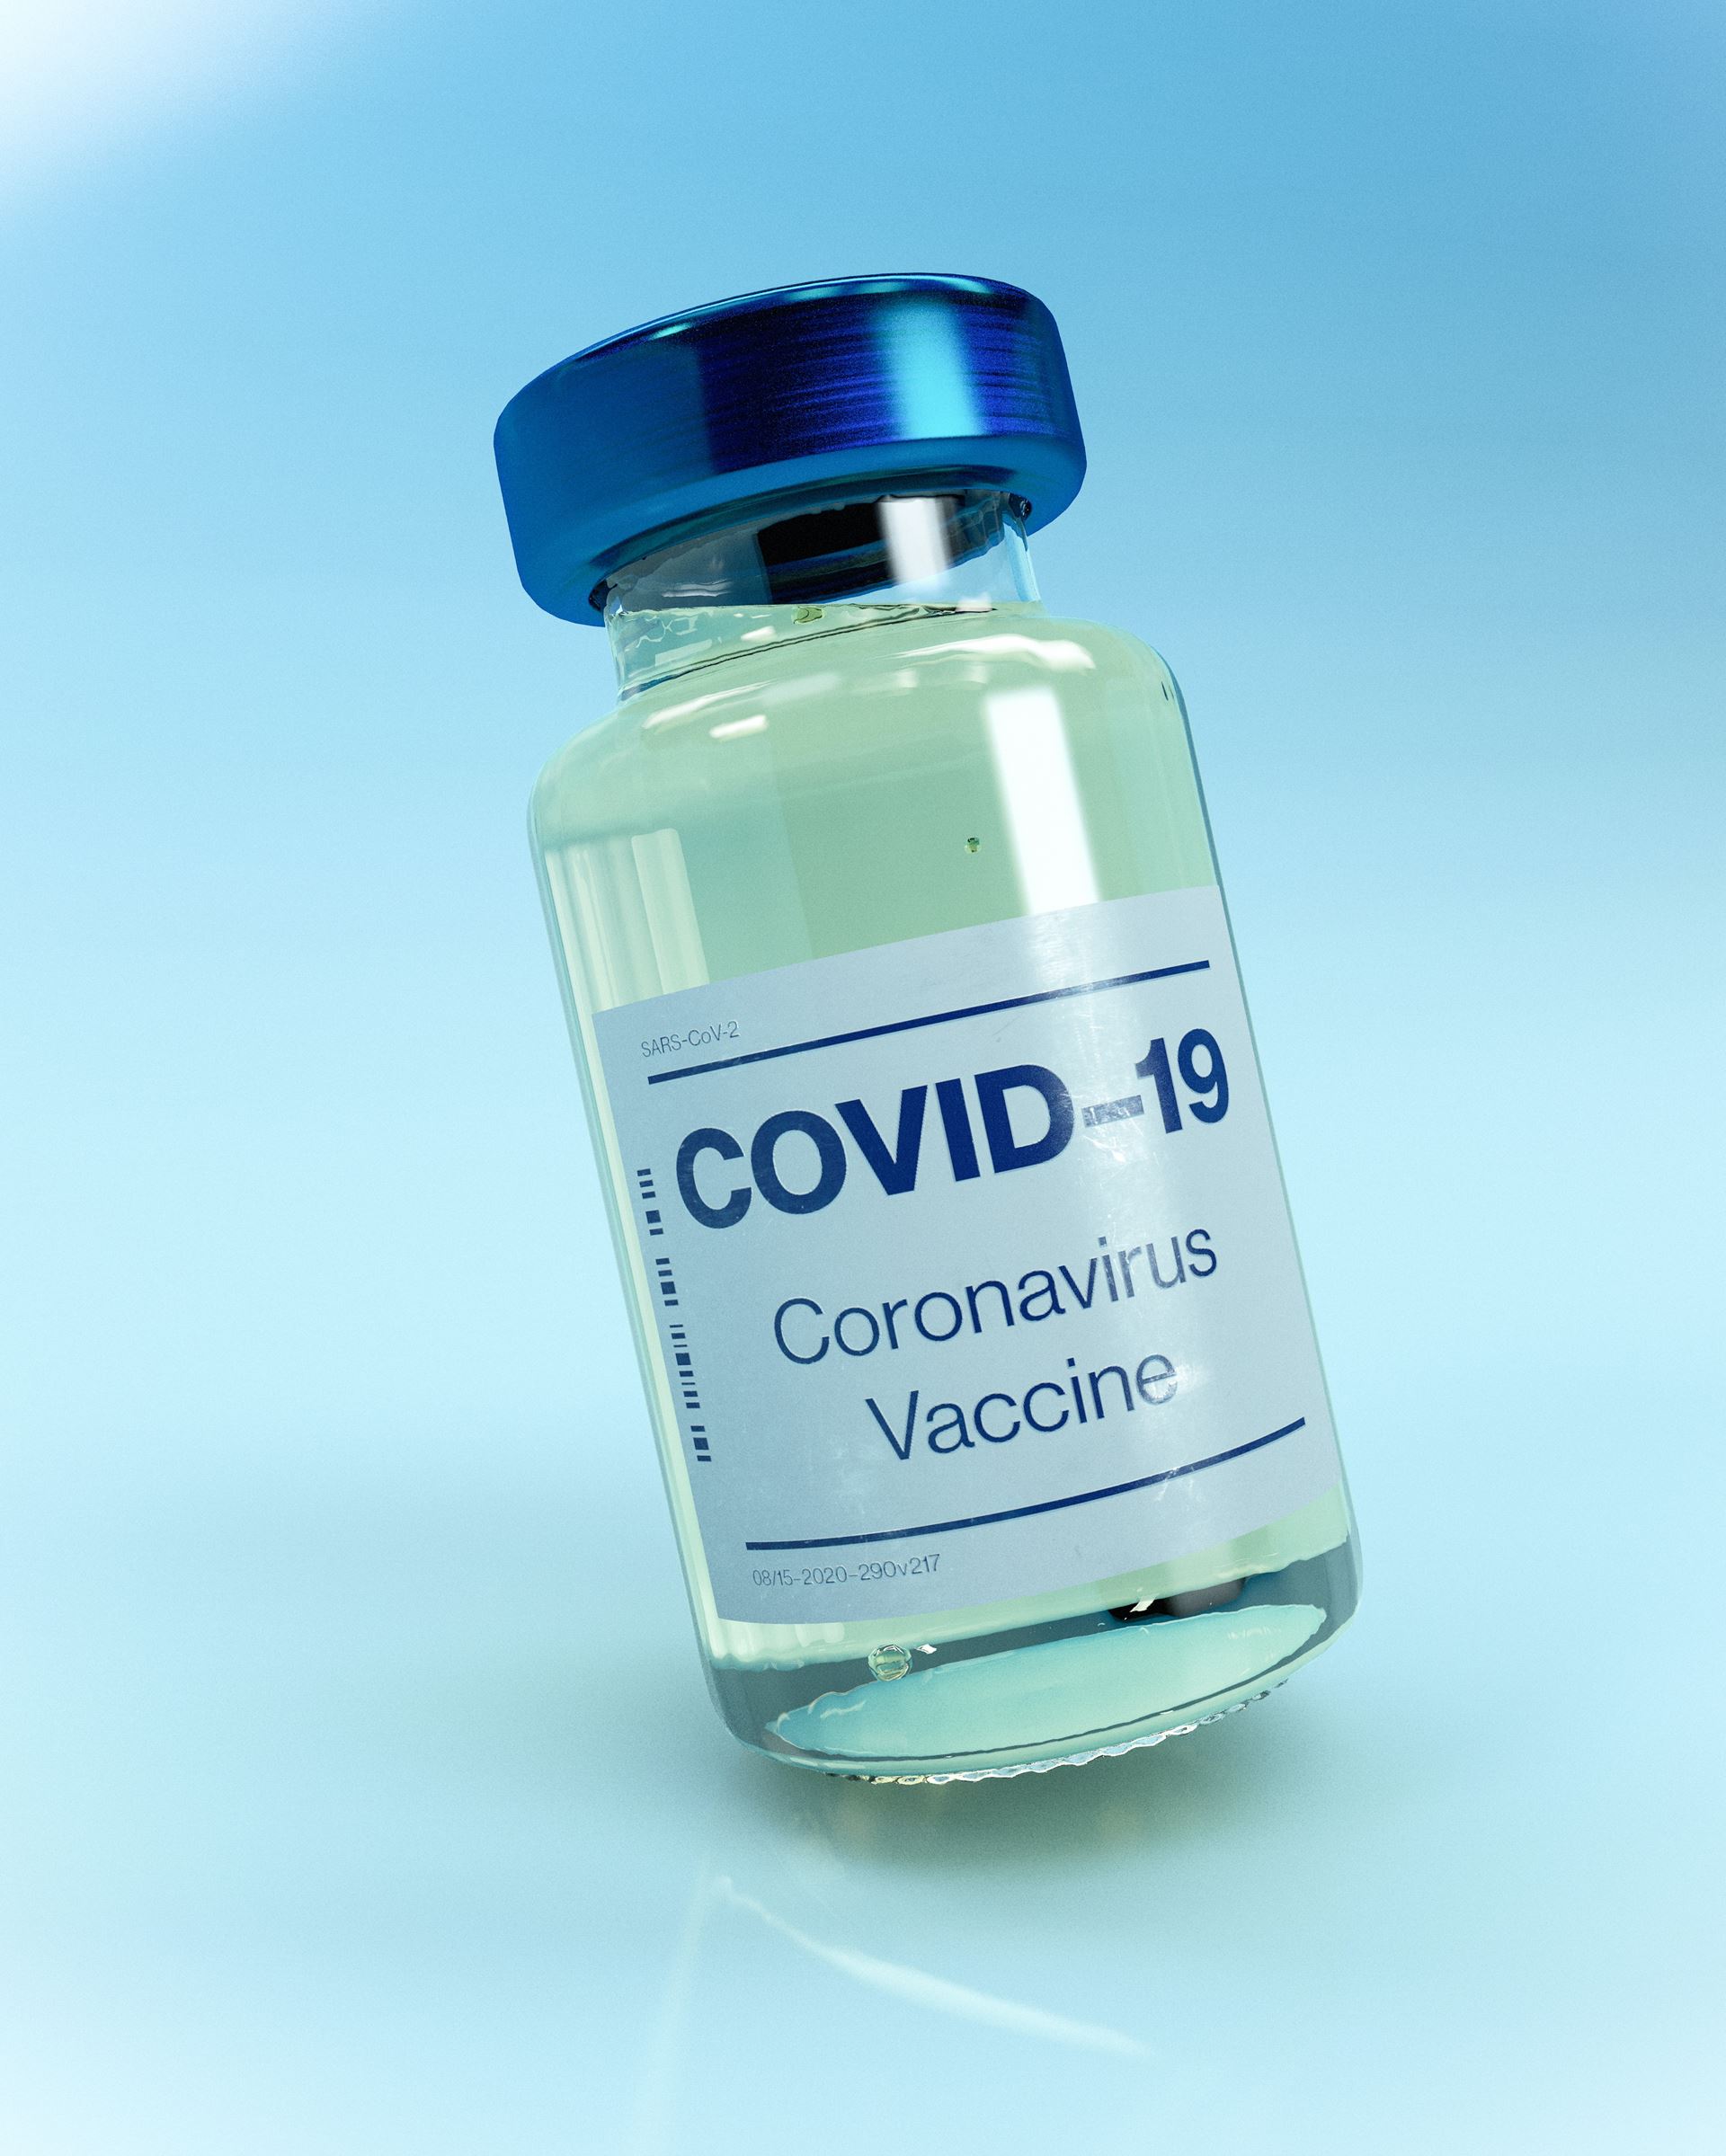 A COVID 19 vaccine vial